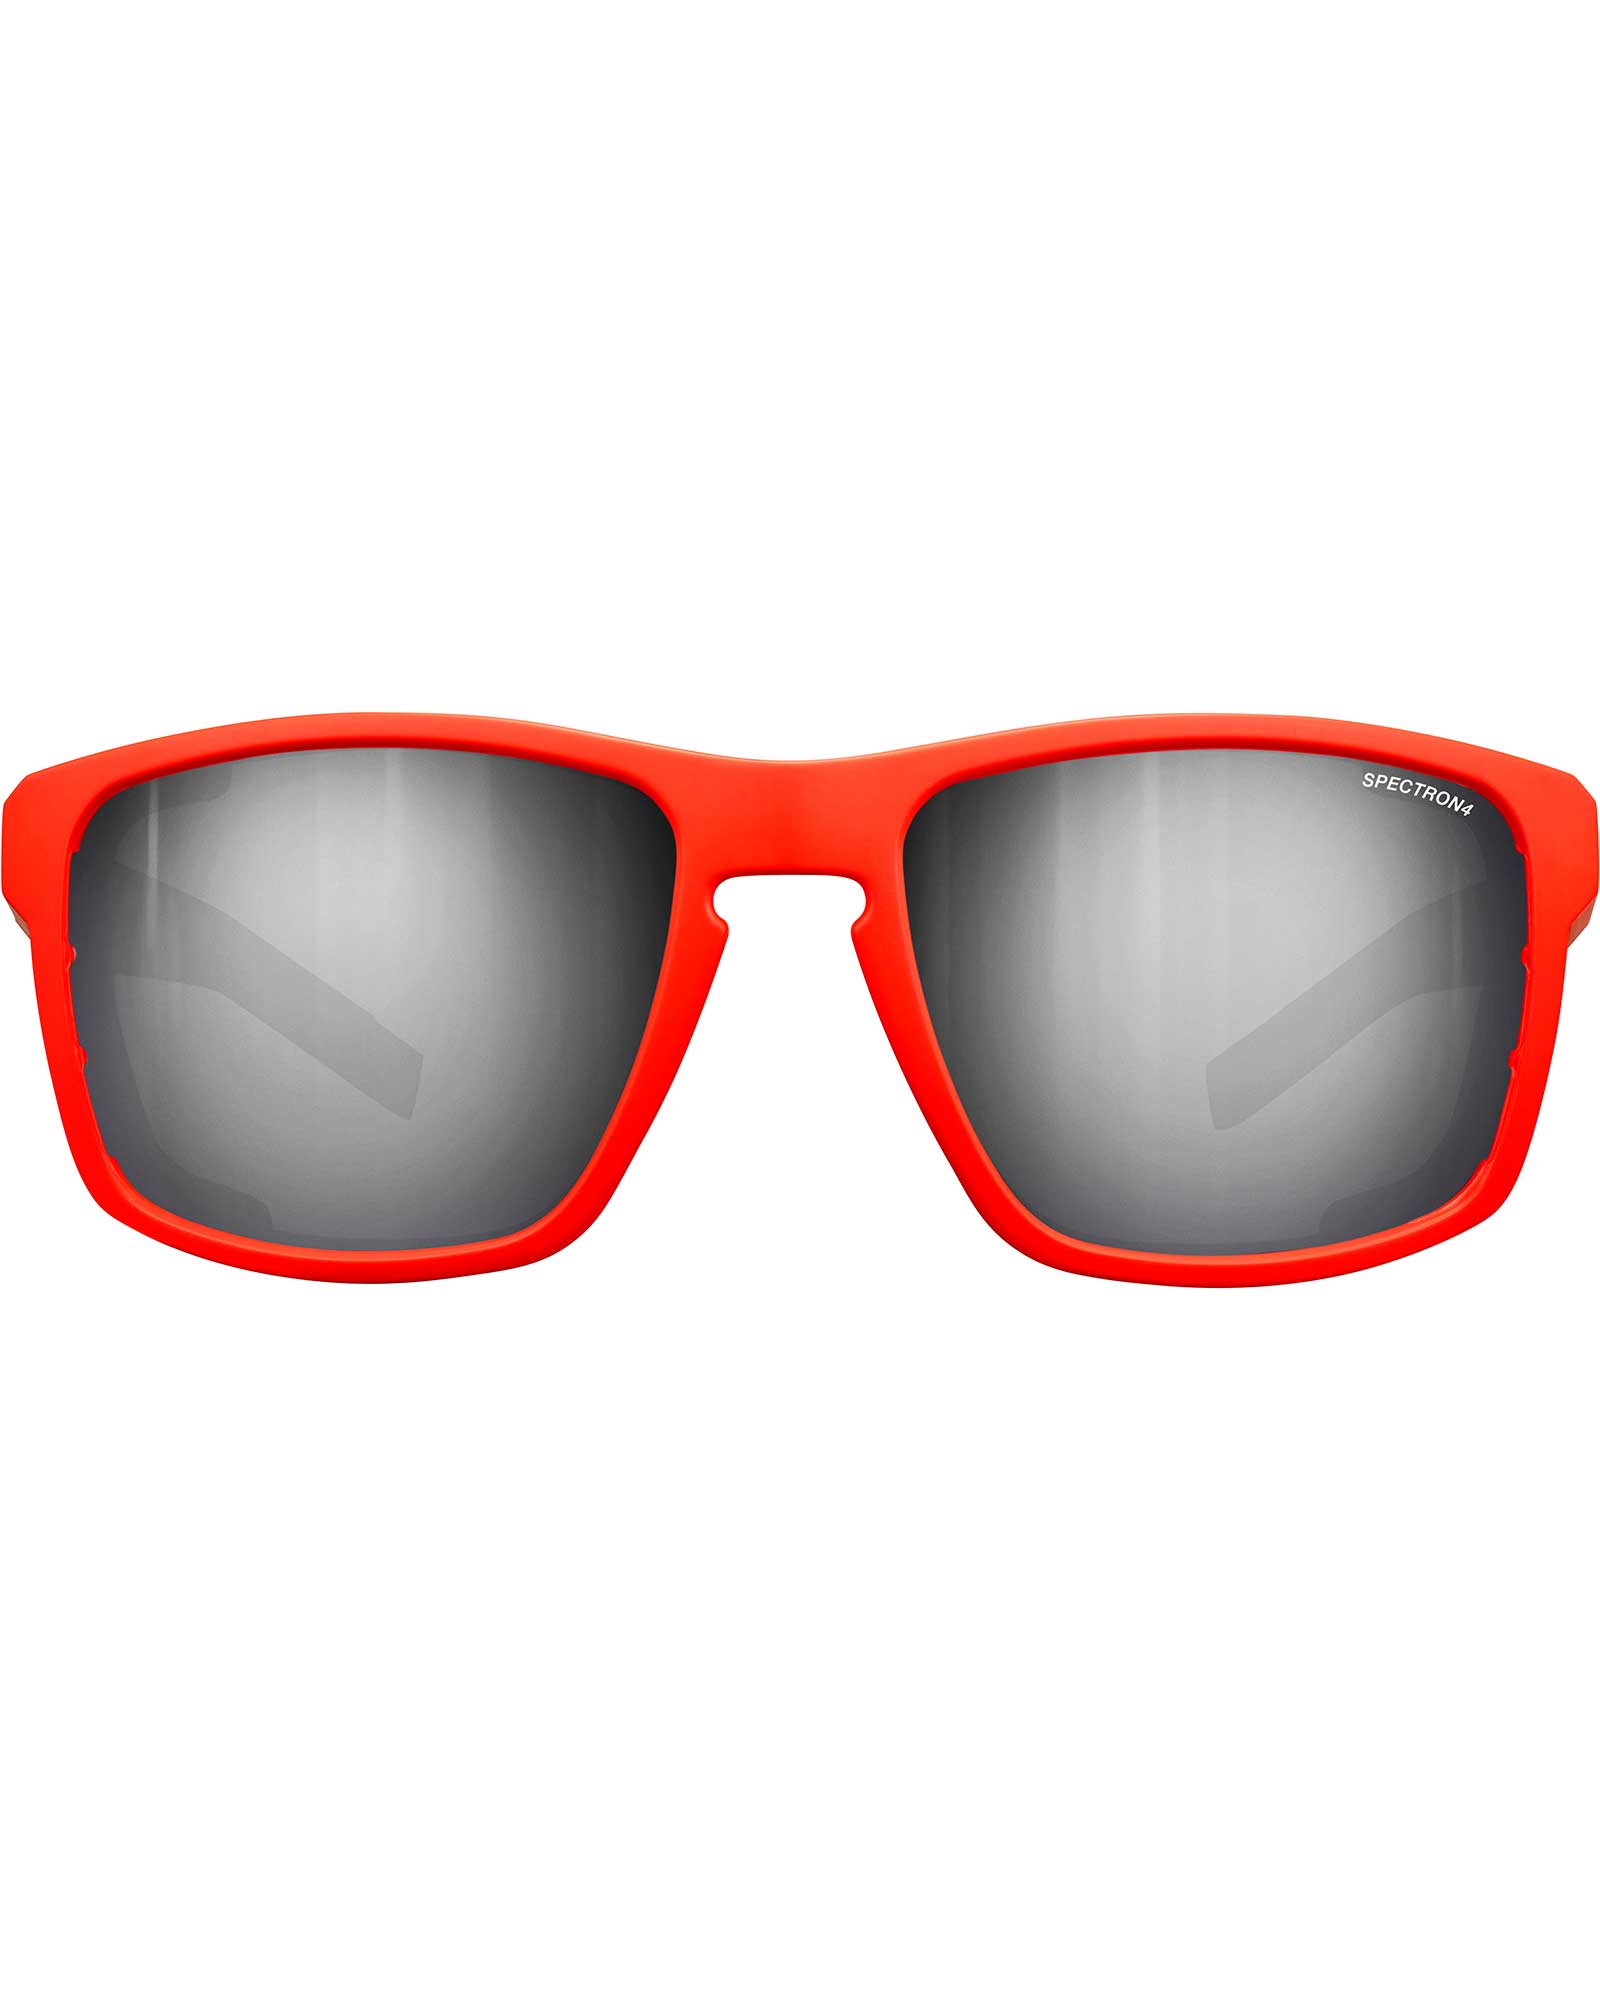 Julbo Shield Spectron 4 Sunglasses